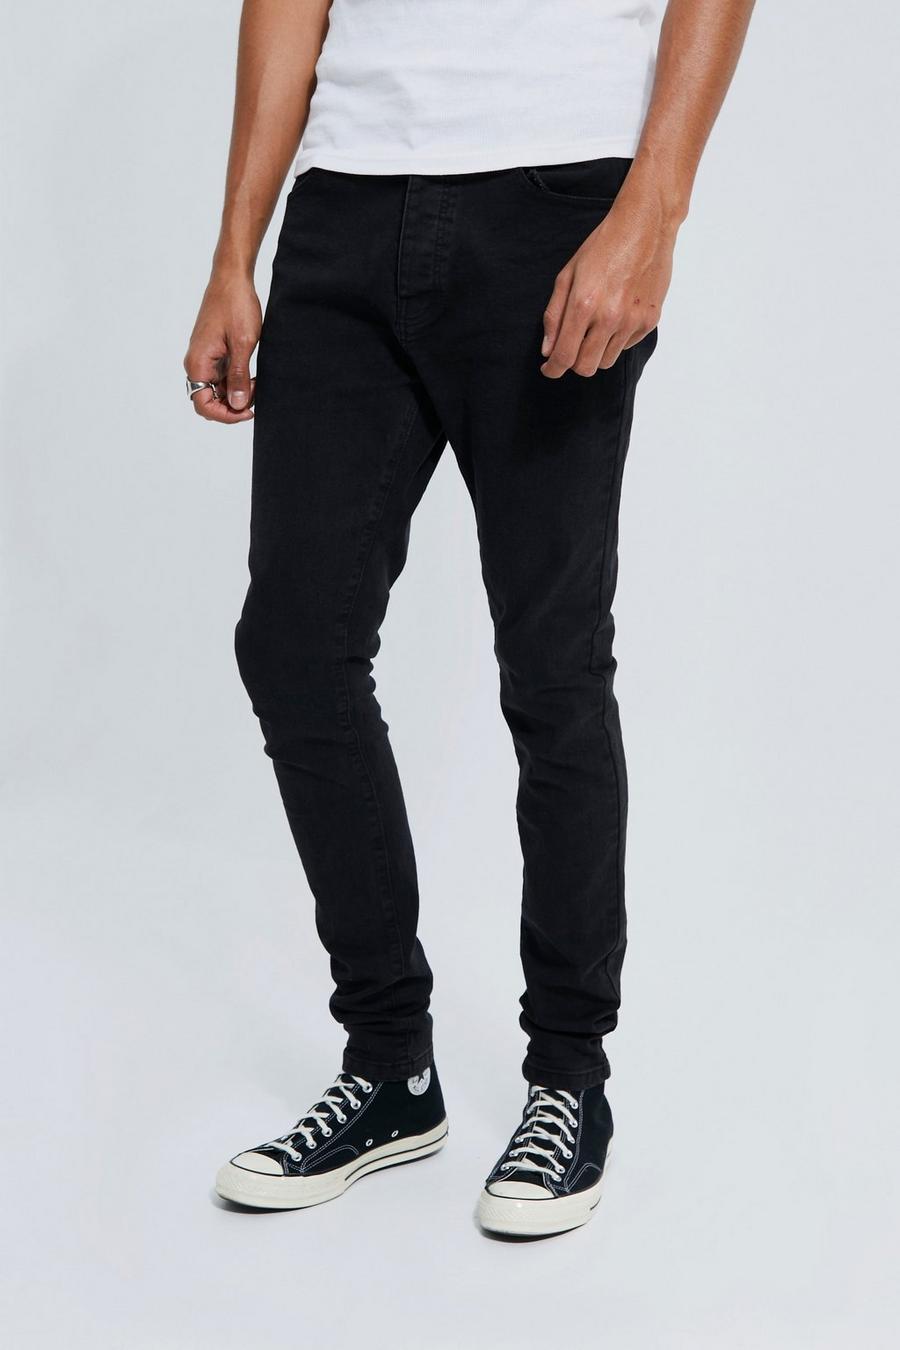 שחור דהוי ג'ינס סקיני נמתח לגברים גבוהים image number 1